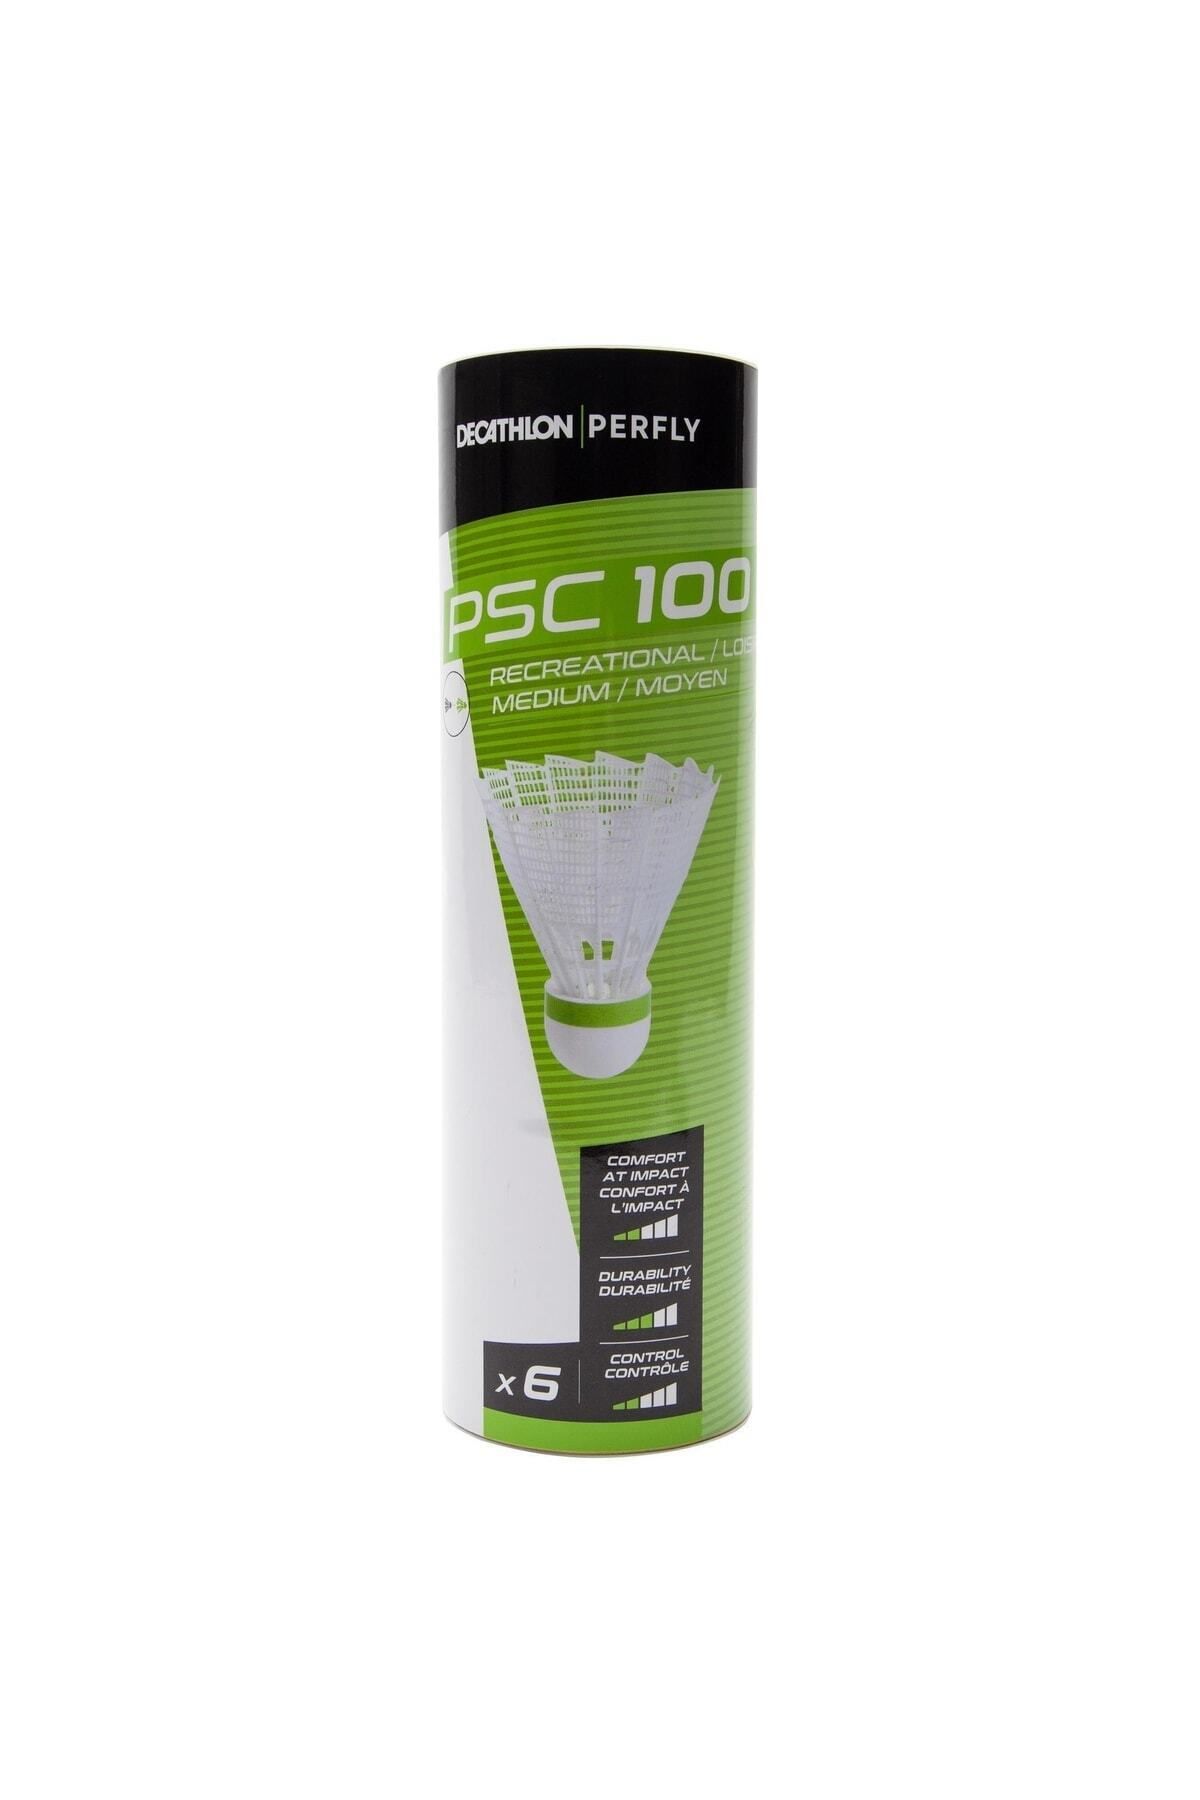 Decathlon Perfly Plastik Badminton Topu - Orta Boy - 6'lı Paket - Beyaz - Psc 100